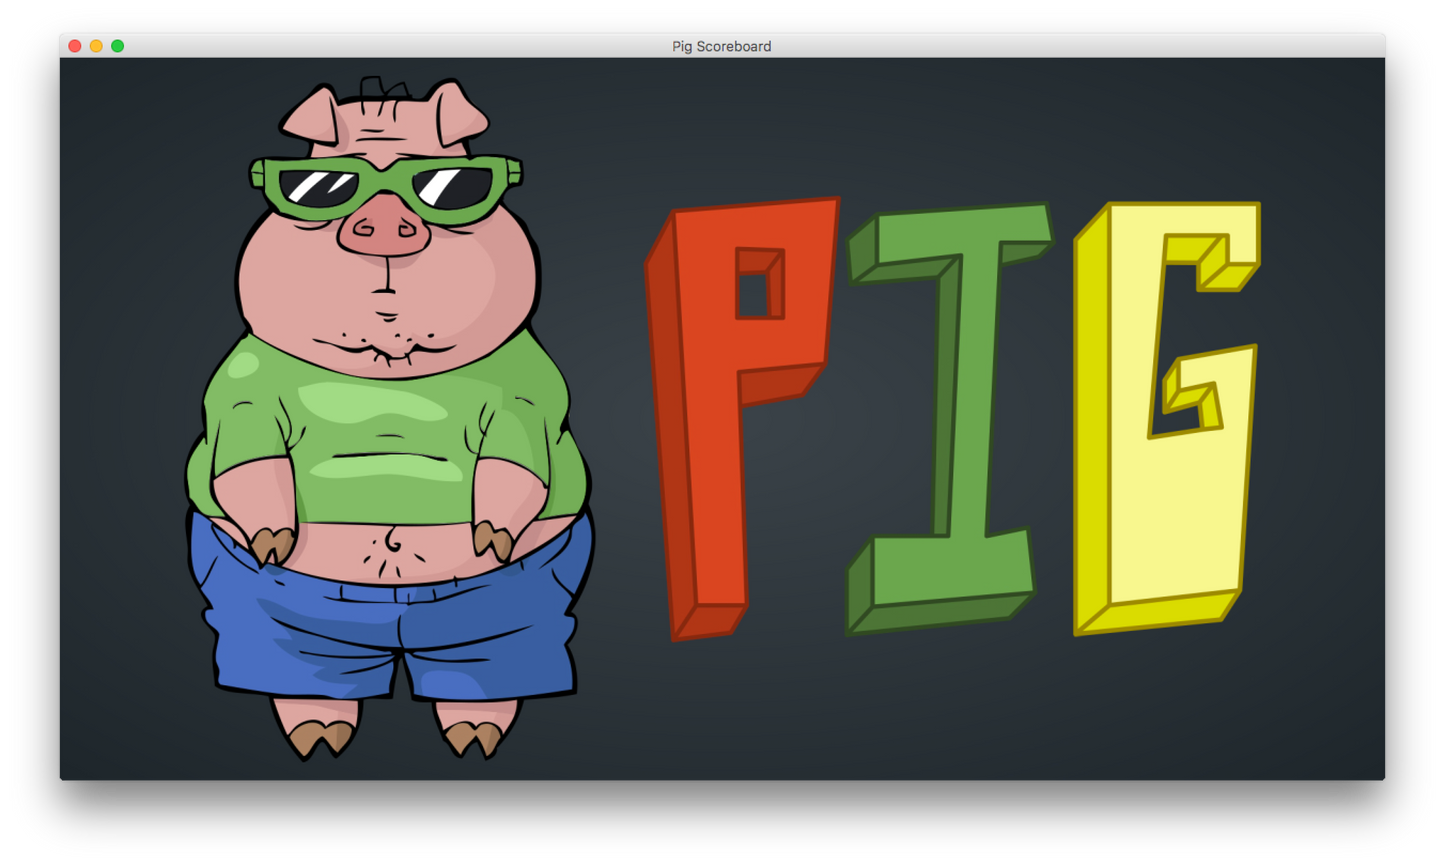 Pig Scoreboard